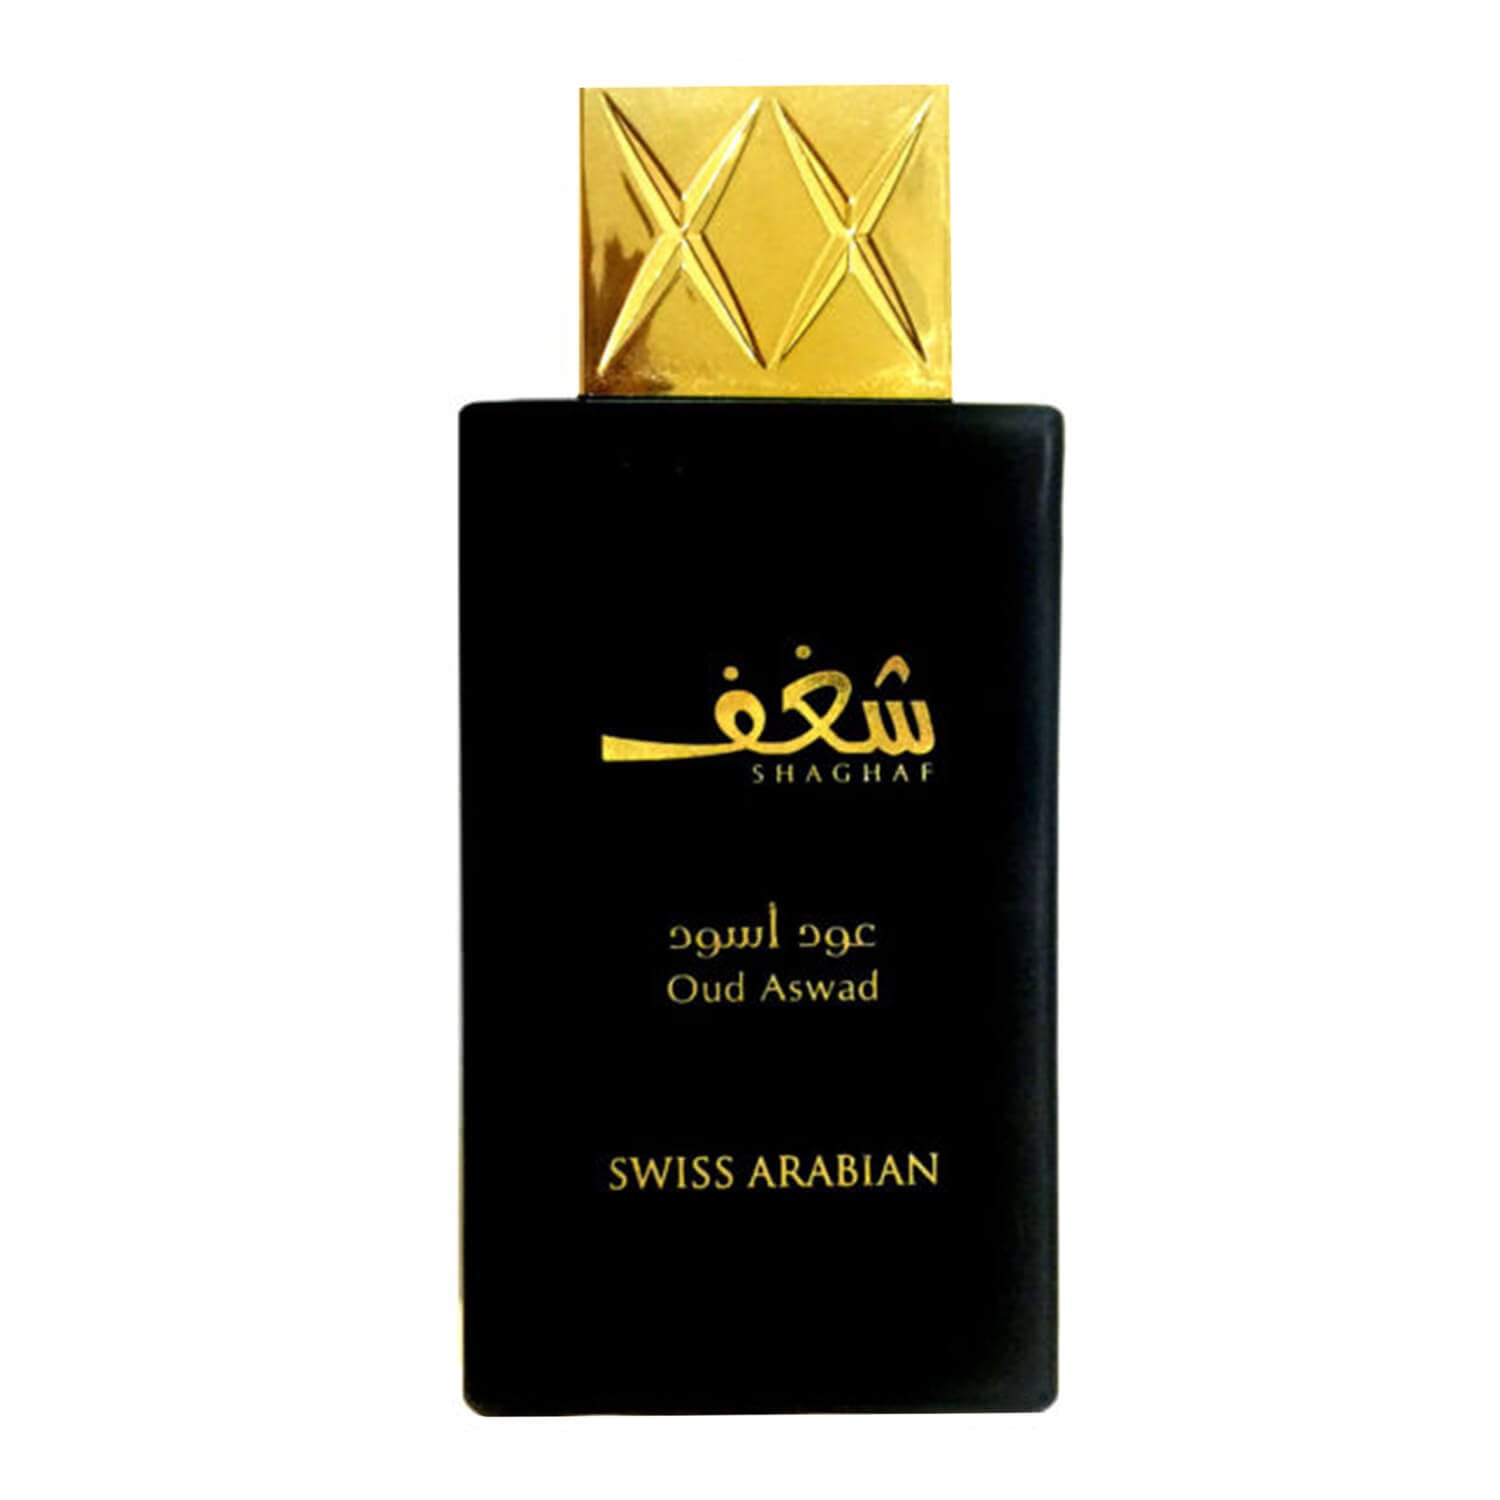 Swiss Arabian Shaghaf Oudh Aswad Spray - 75ml